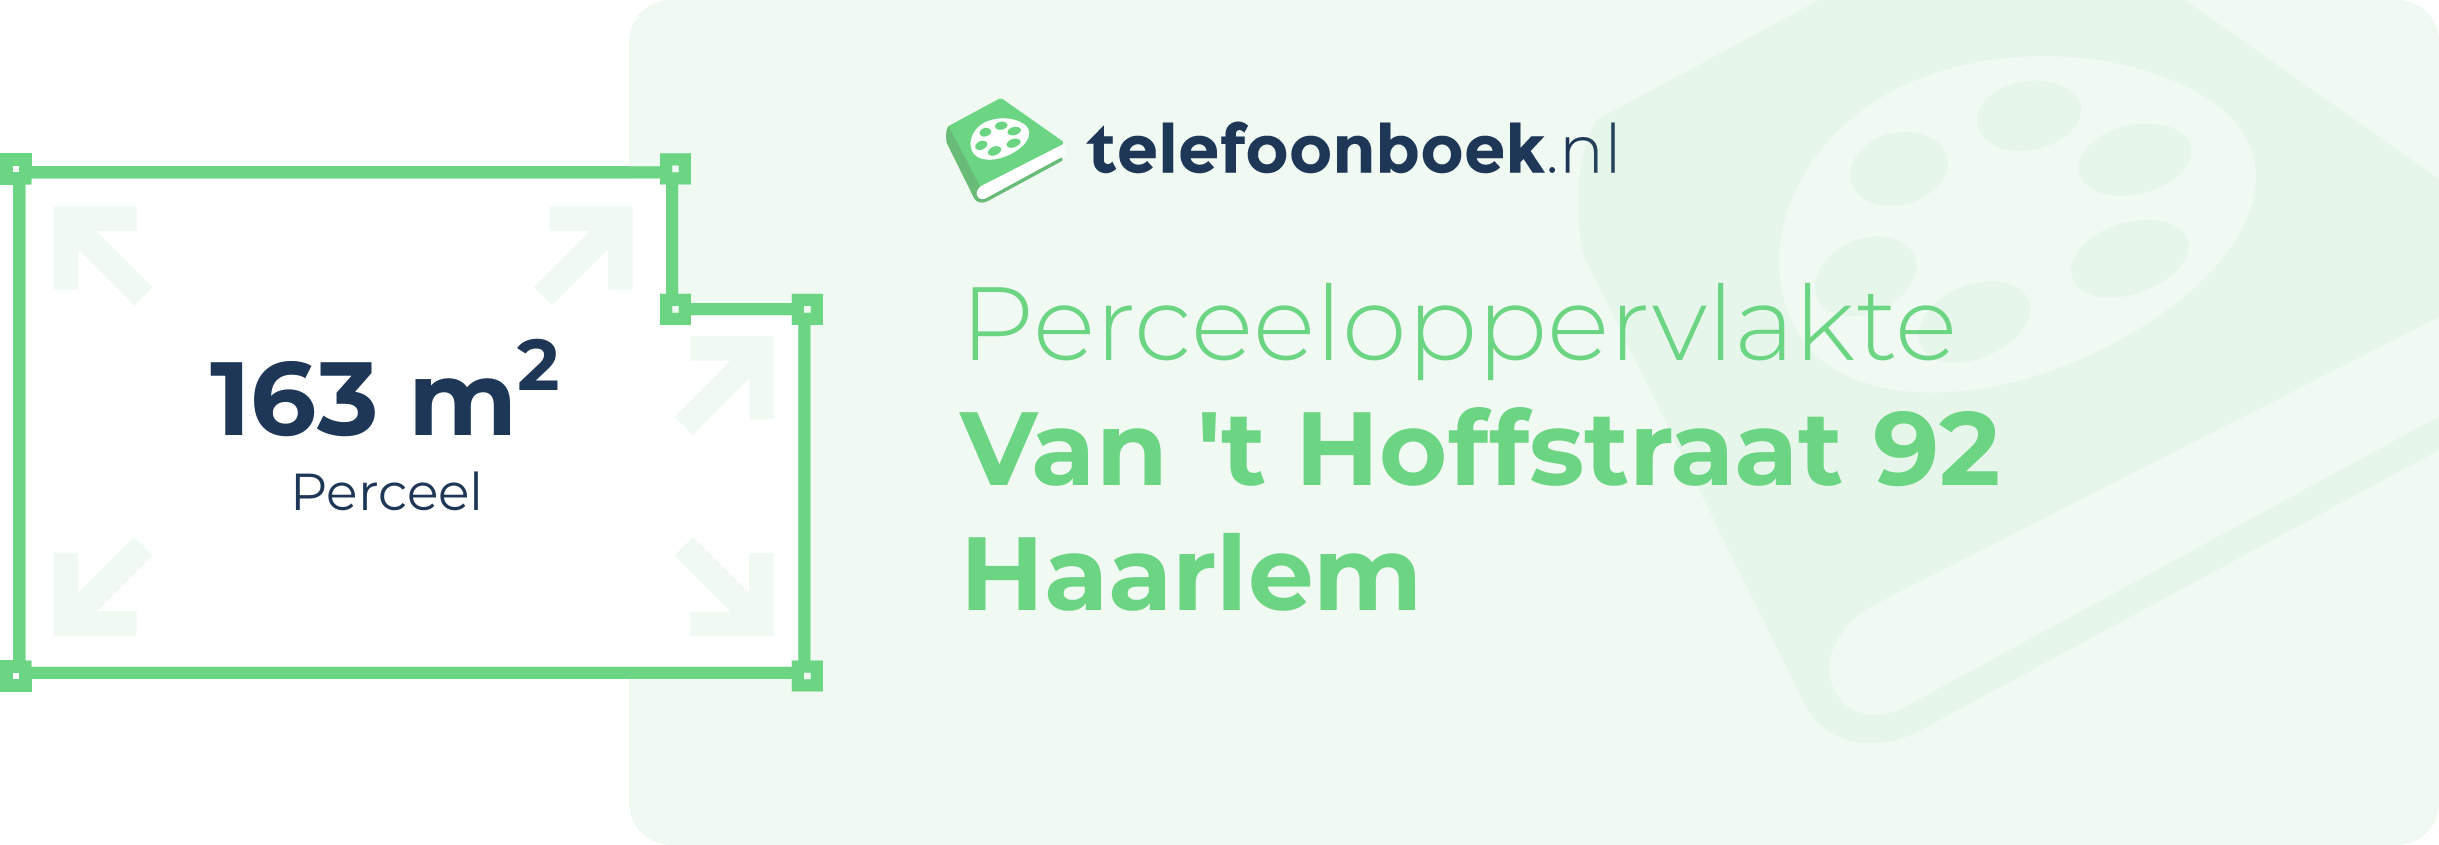 Perceeloppervlakte Van 't Hoffstraat 92 Haarlem